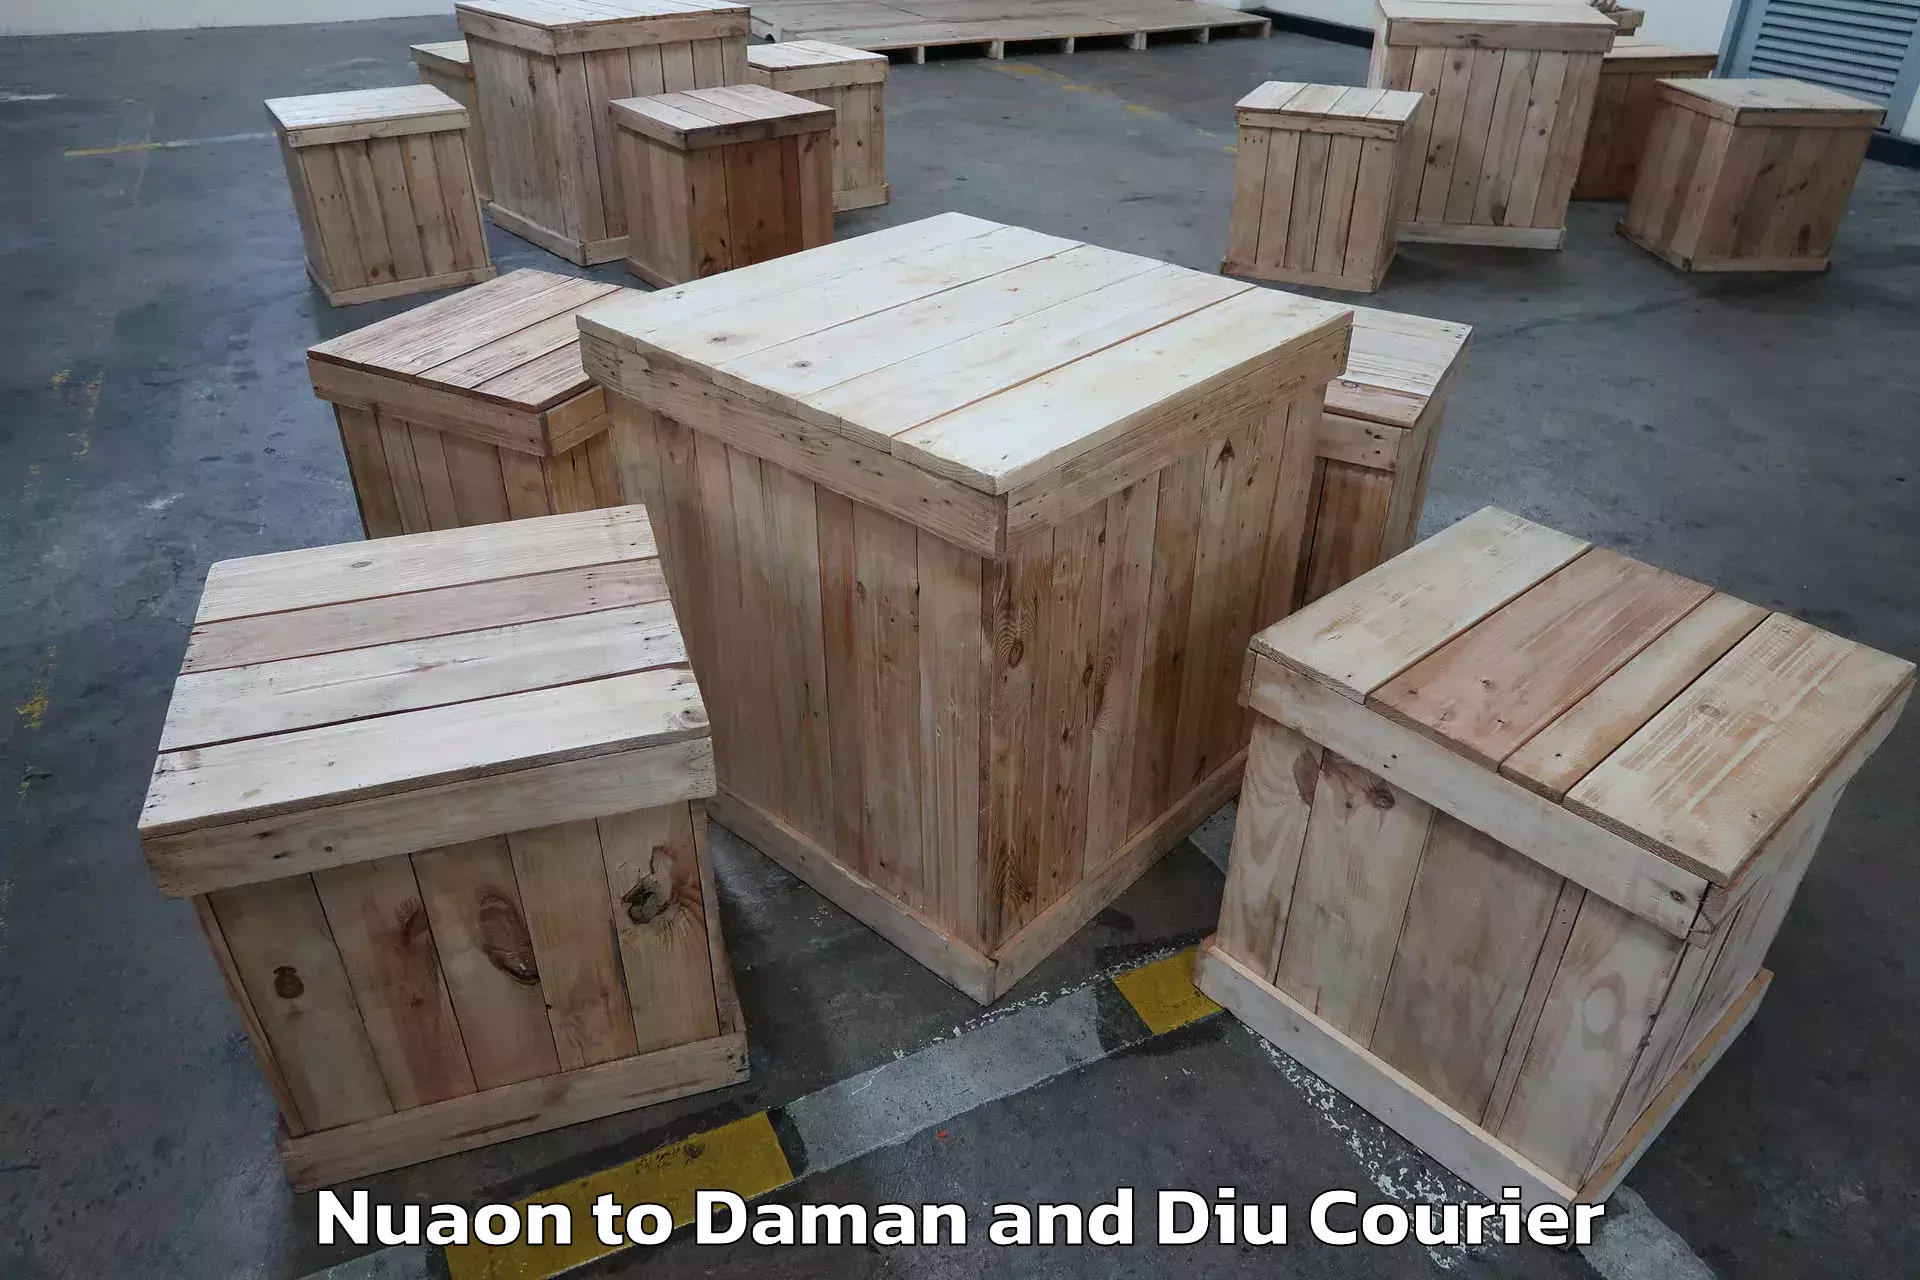 Expert goods movers Nuaon to Daman and Diu